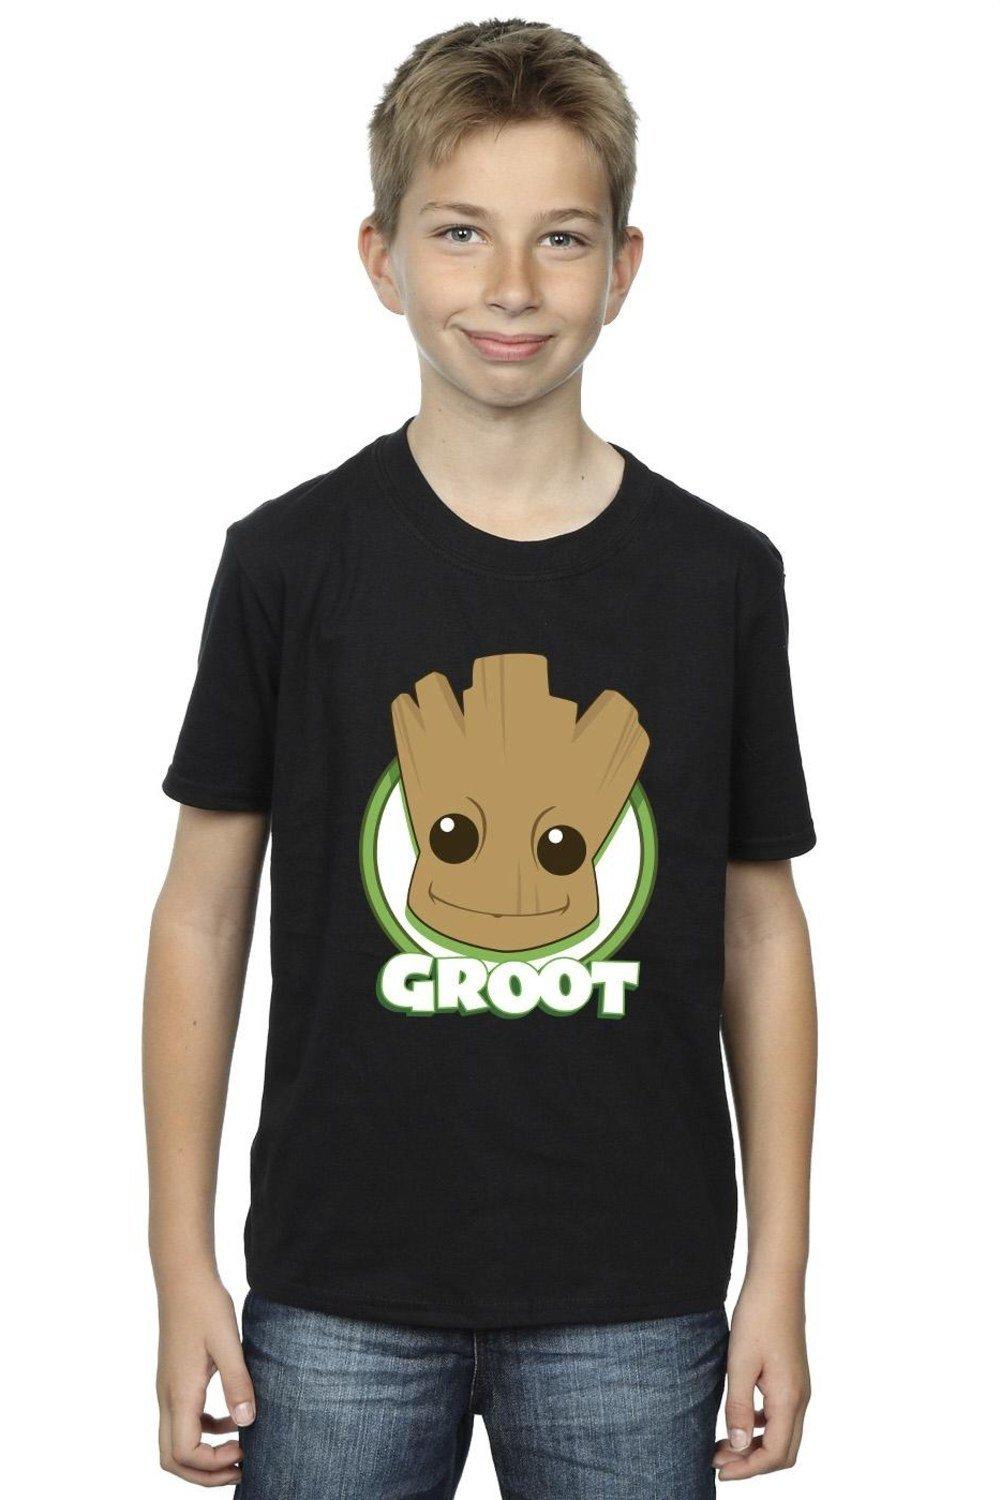 Groot Badge T-Shirt